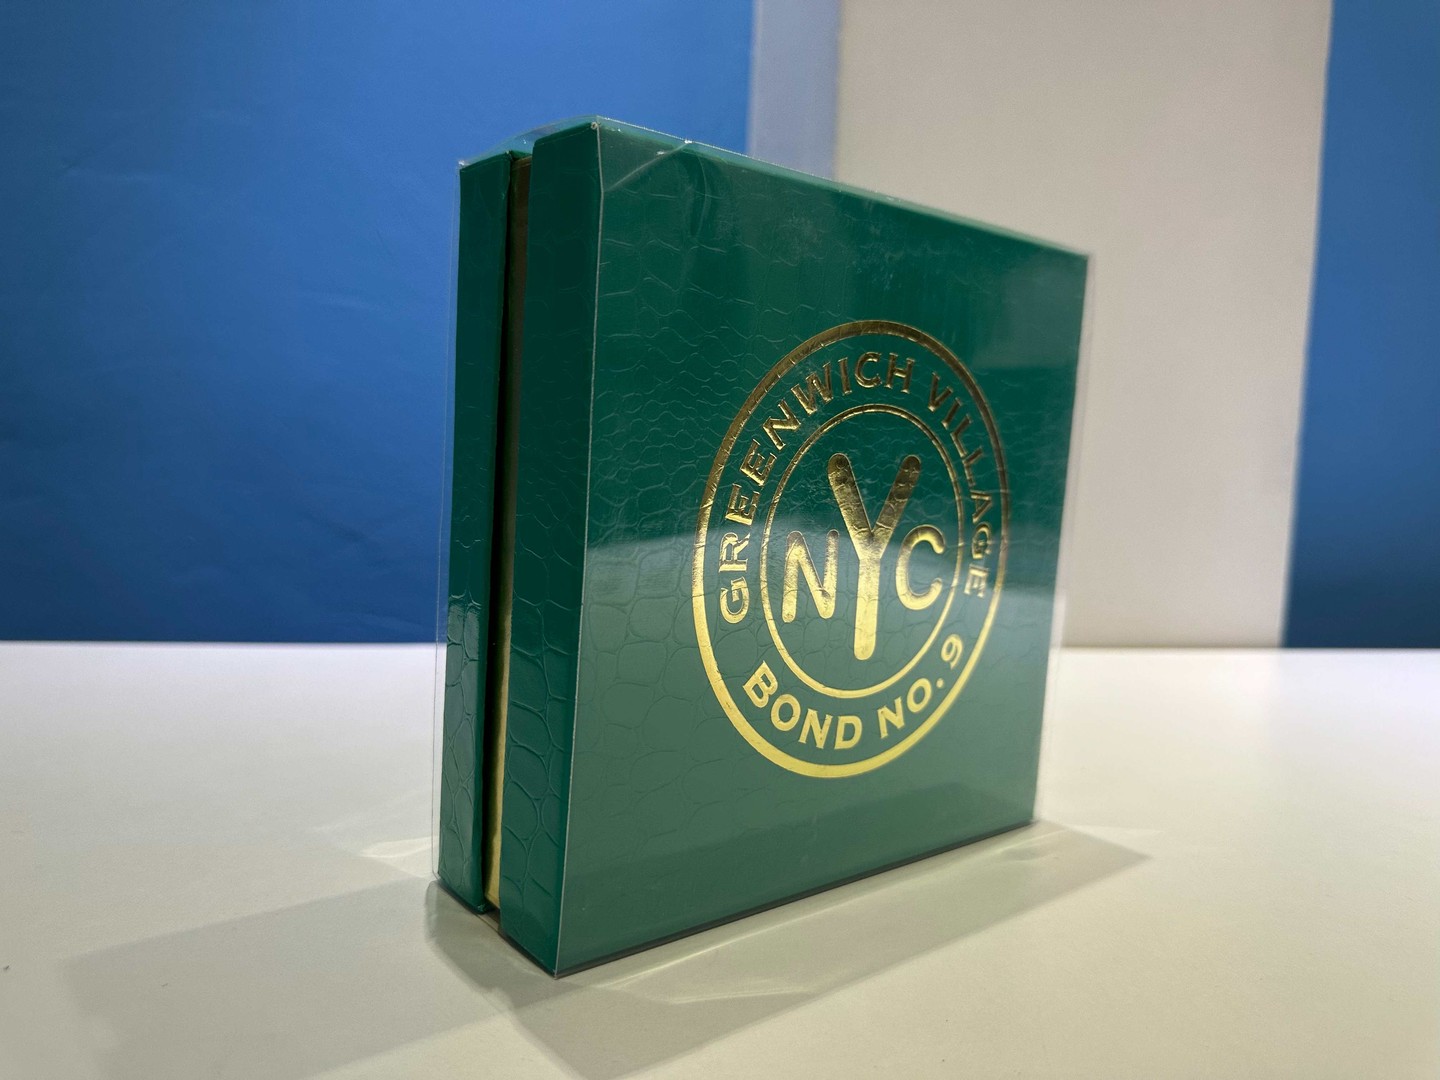 joyas, relojes y accesorios - Vendo Perfumes BOND NO.9 - Greenwich Village - Nuevos - Originales $ 18,500 NEG 0